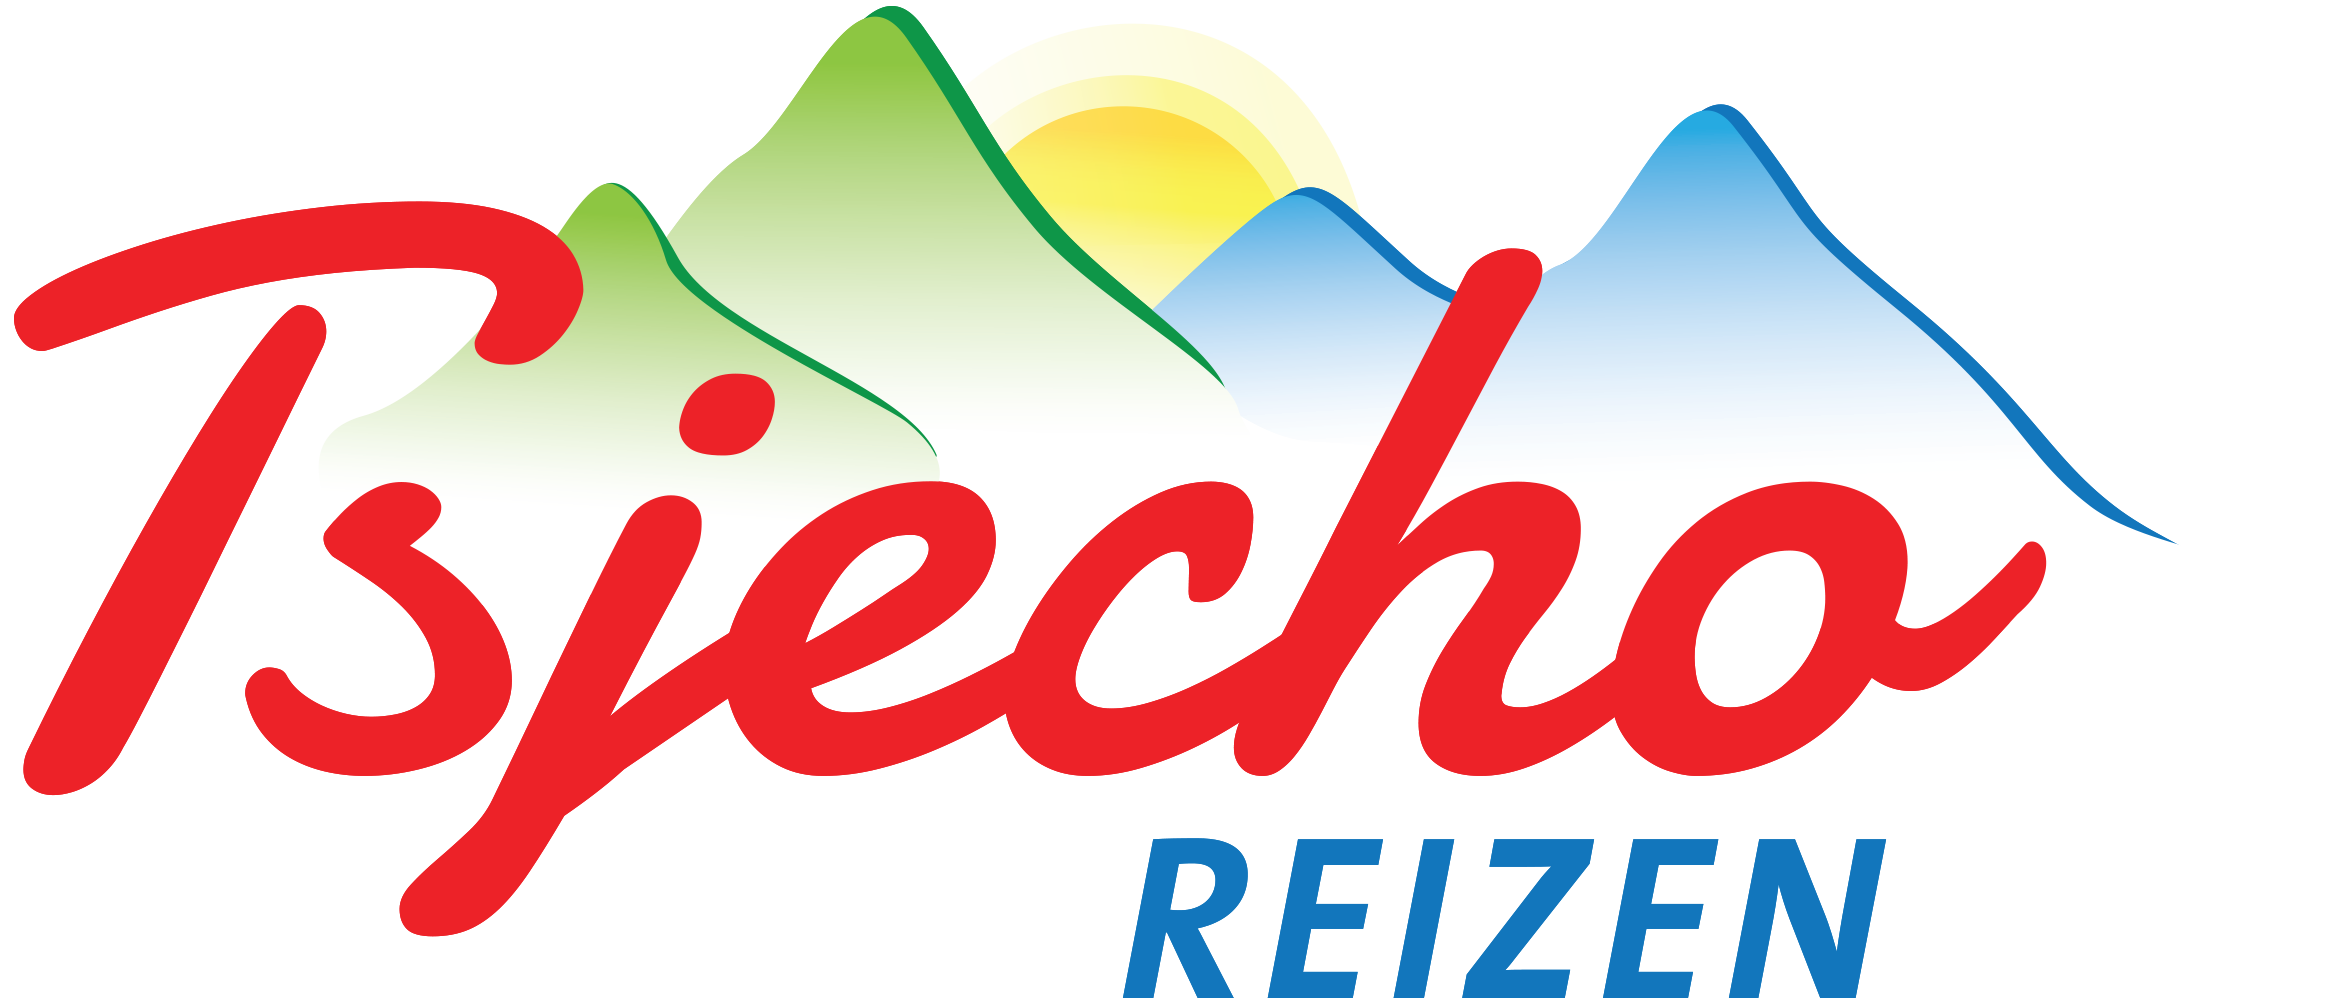 Tsjecho Reizen - Reisspecialist in reizen naar Tsjechië en Slowakije